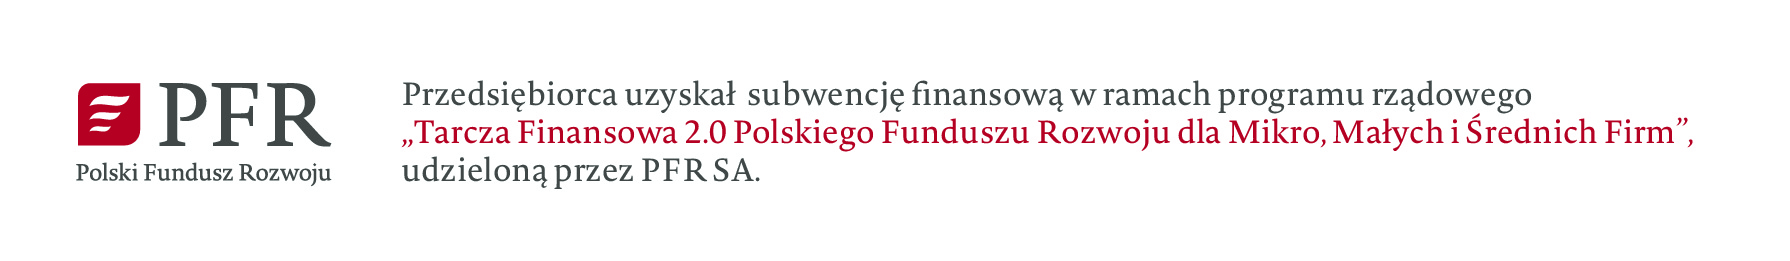 Przedsiębiorca uzyskał subwencję nansową w ramach programu rządowego „Tarcza Finansowa 2.0 Polskiego Funduszu Rozwoju dla Mikro, Małych i Średnich Firm”, udzieloną przez PFR SA